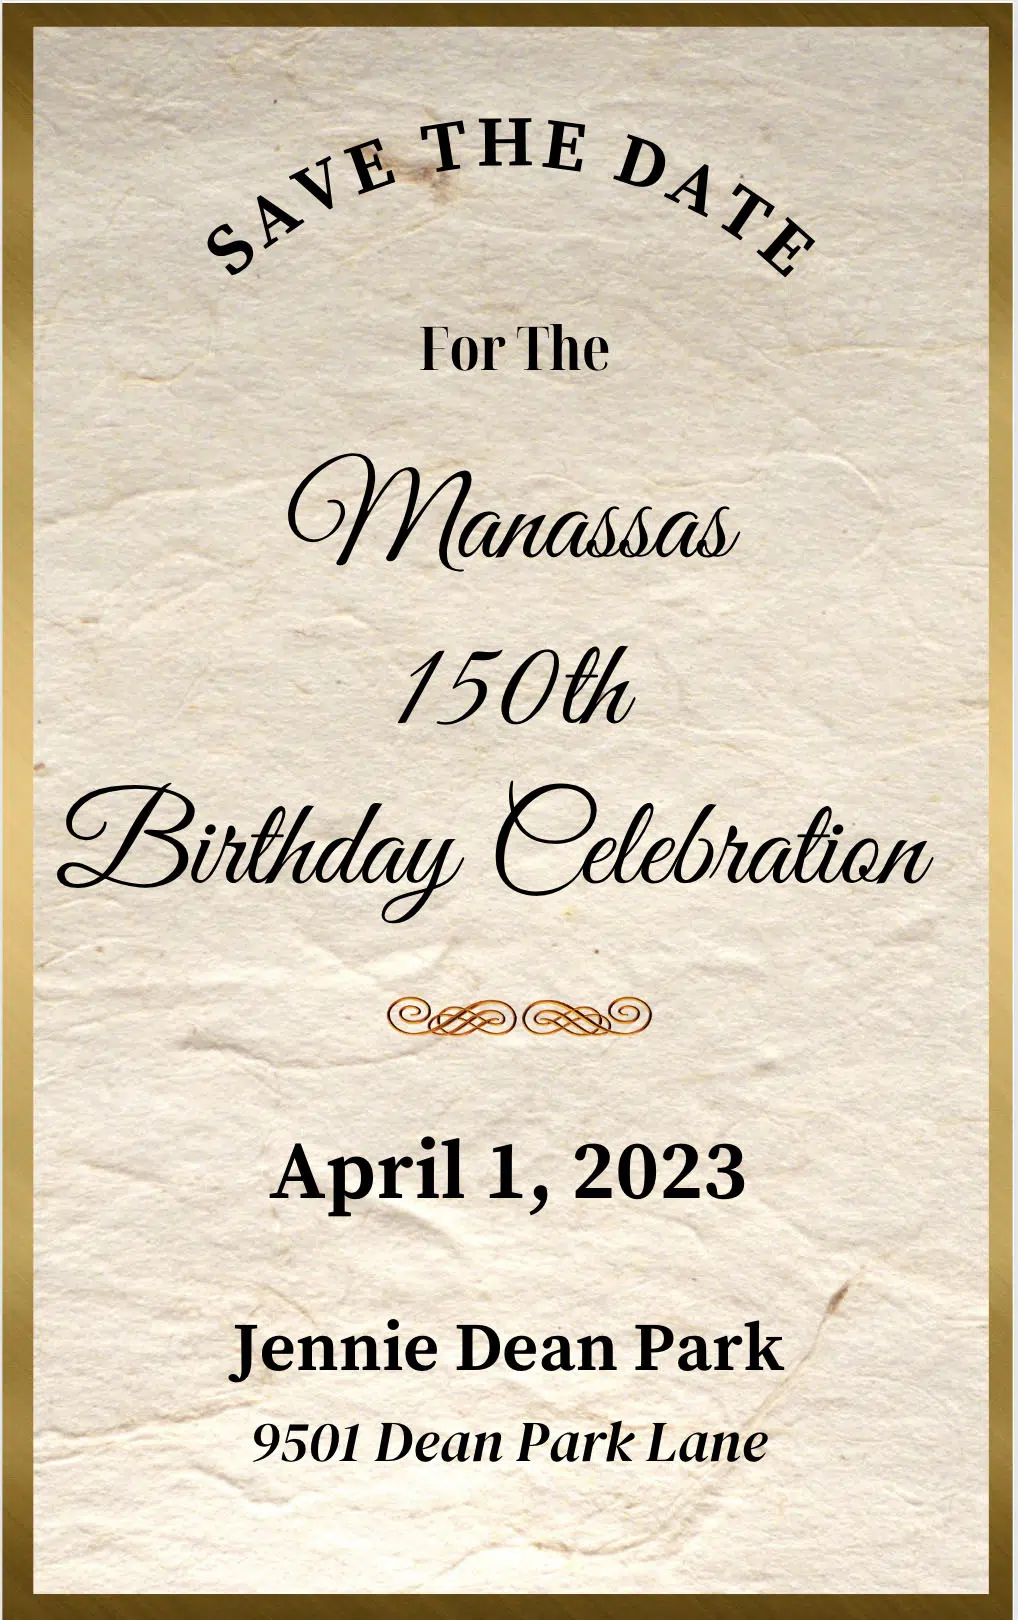 Manassas: Hãy tham gia chuyến phiêu lưu tuyệt vời đến Manassas - tâm điểm lịch sử trong cuộc Nội chiến Hoa Kỳ. Khám phá vẻ đẹp lịch sử của những năm tháng đi qua qua các công viên, đài tưởng niệm và di tích. Những bức ảnh sẽ cho bạn cái nhìn vẻ đẹp khó quên của thành phố Manassas.